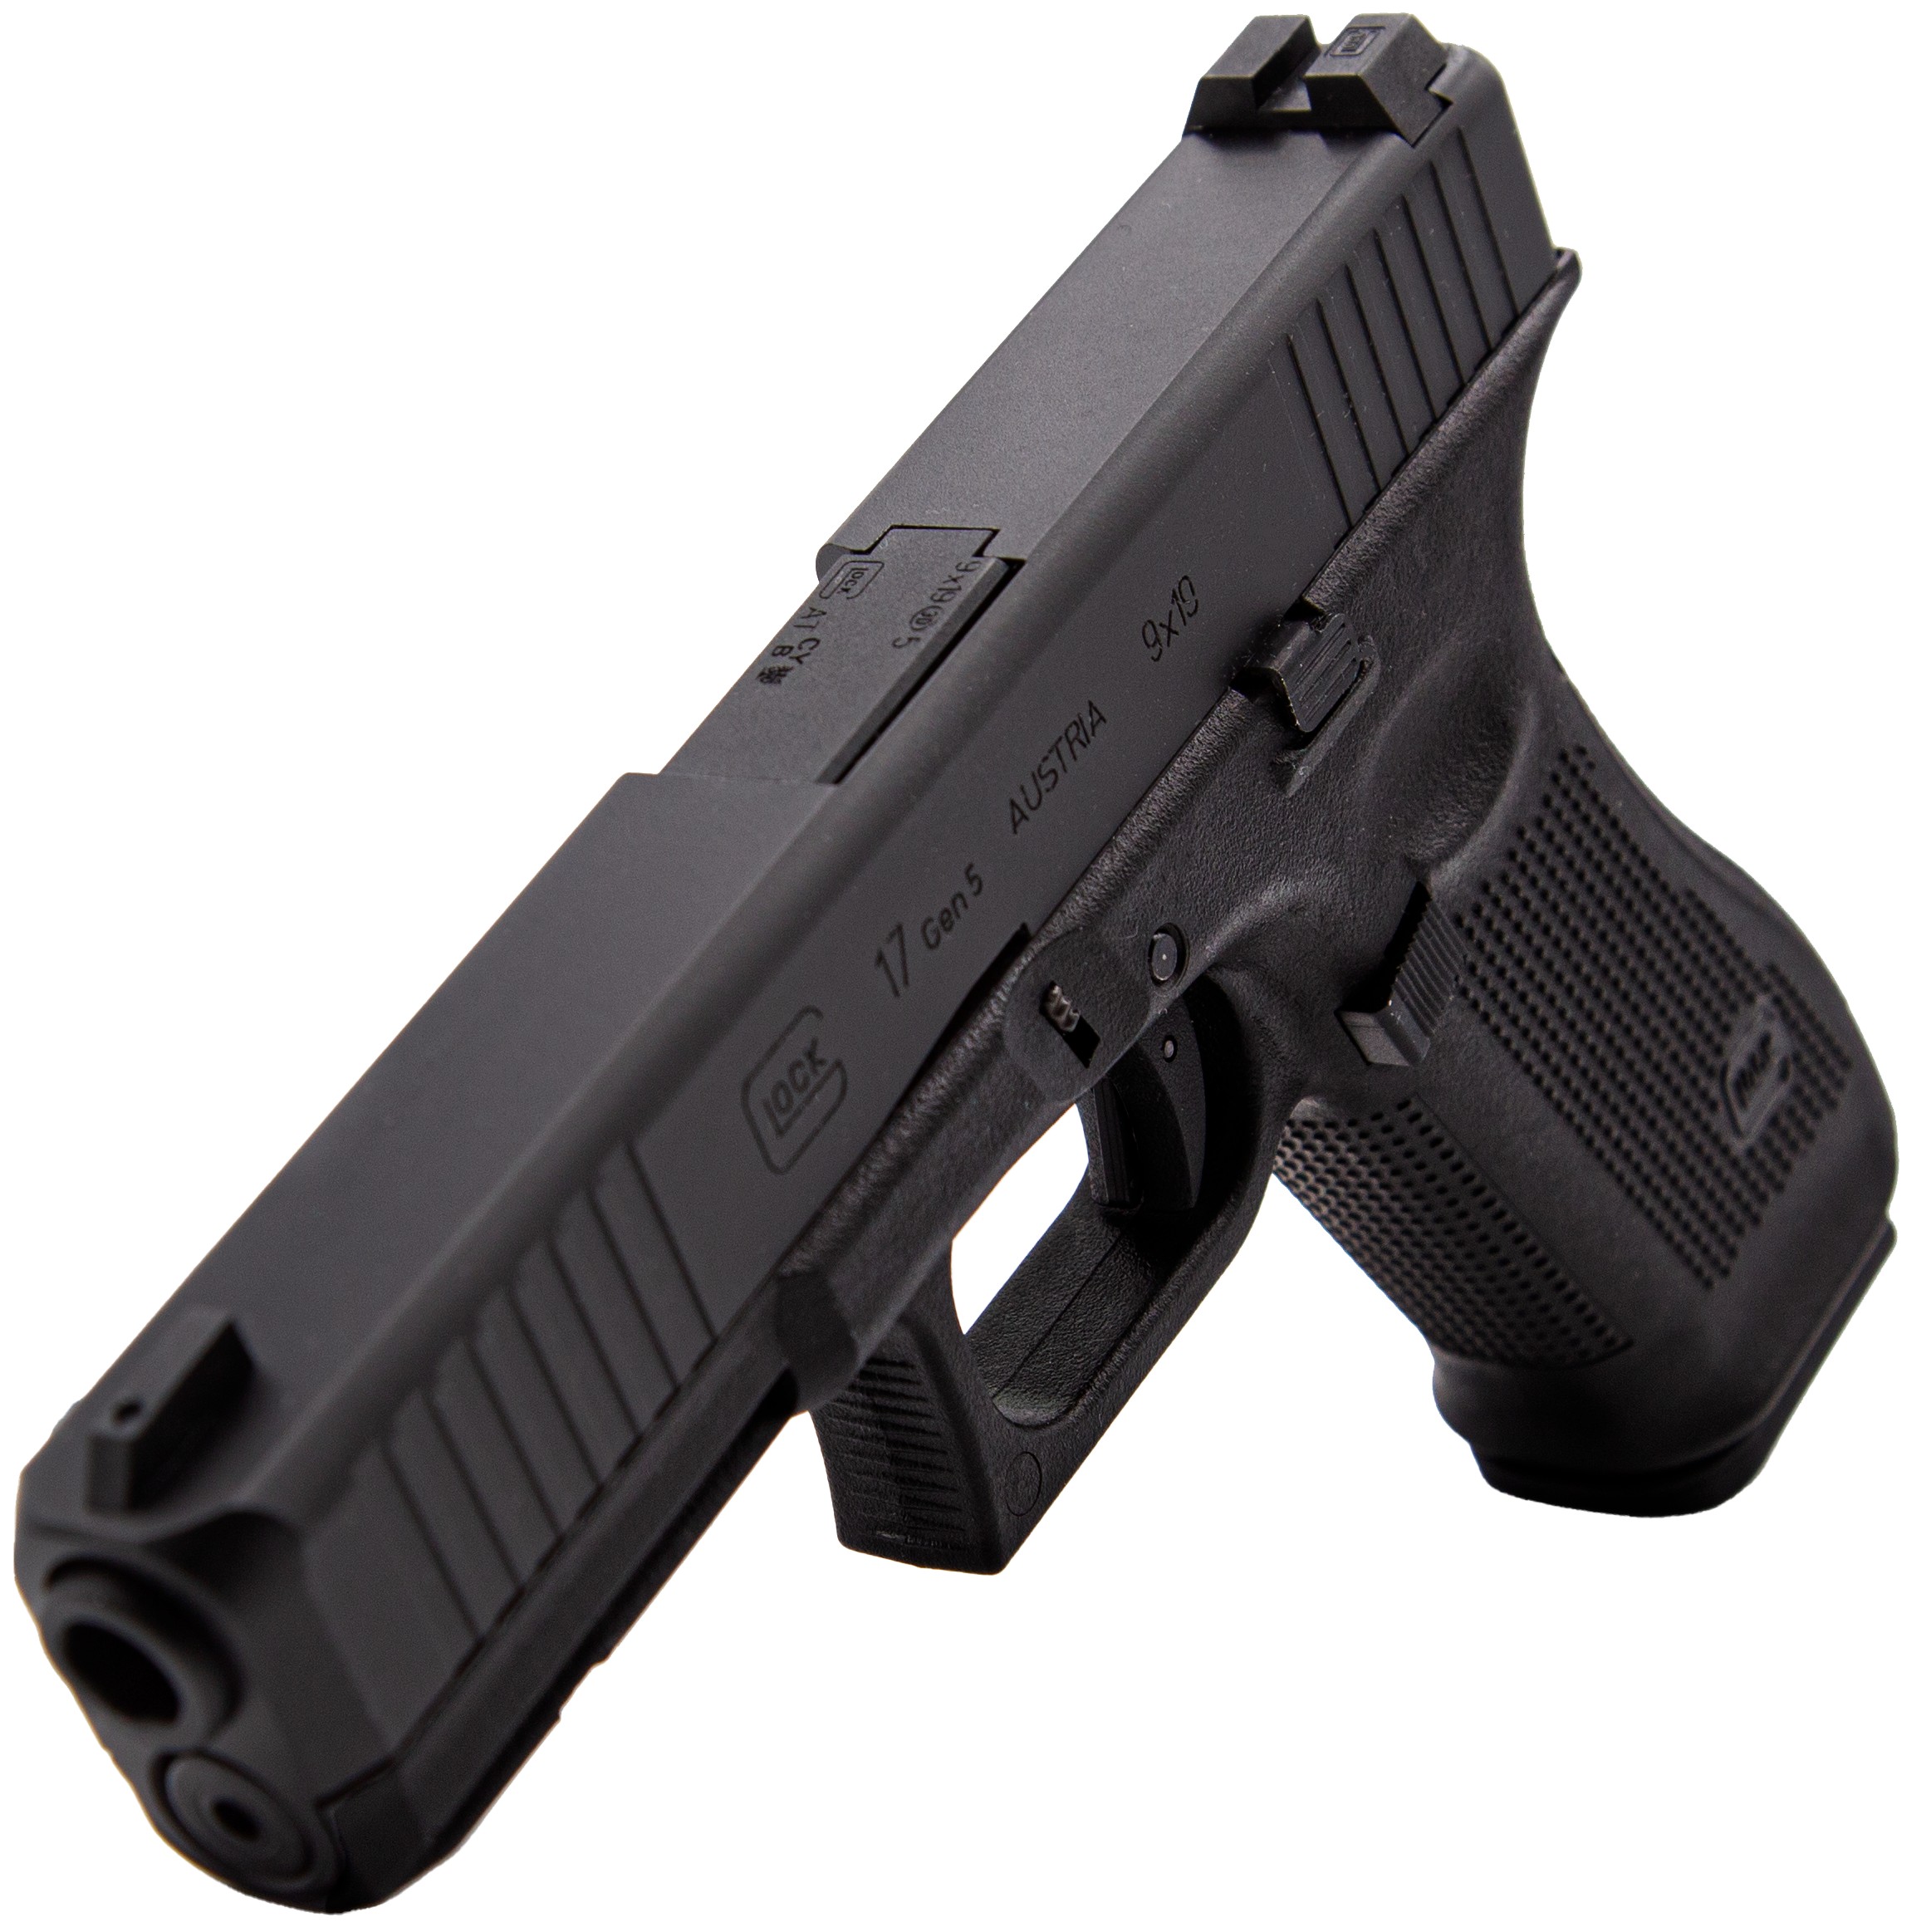 Cybergun - Pistolet Glock 17 Gen5 GBB - GAZ - Noir (1 joule